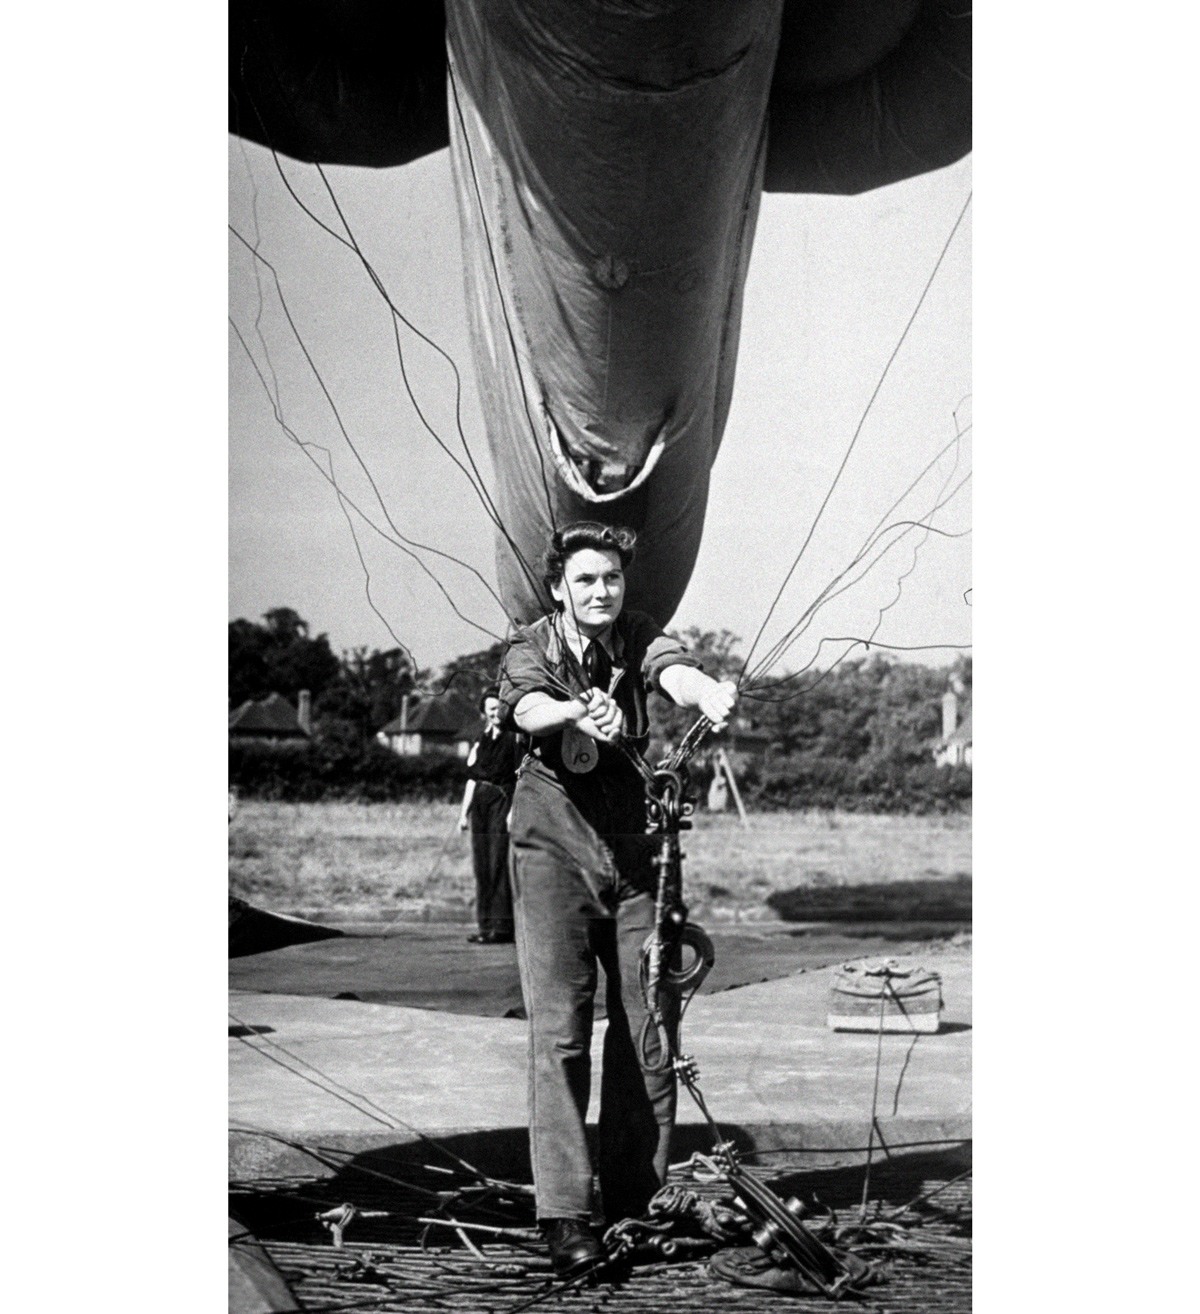 إحدى أفراد القوات الجوية المساعدة النسائية تتدرب على التحكم في المنطاد، حوالي سنة 1942.